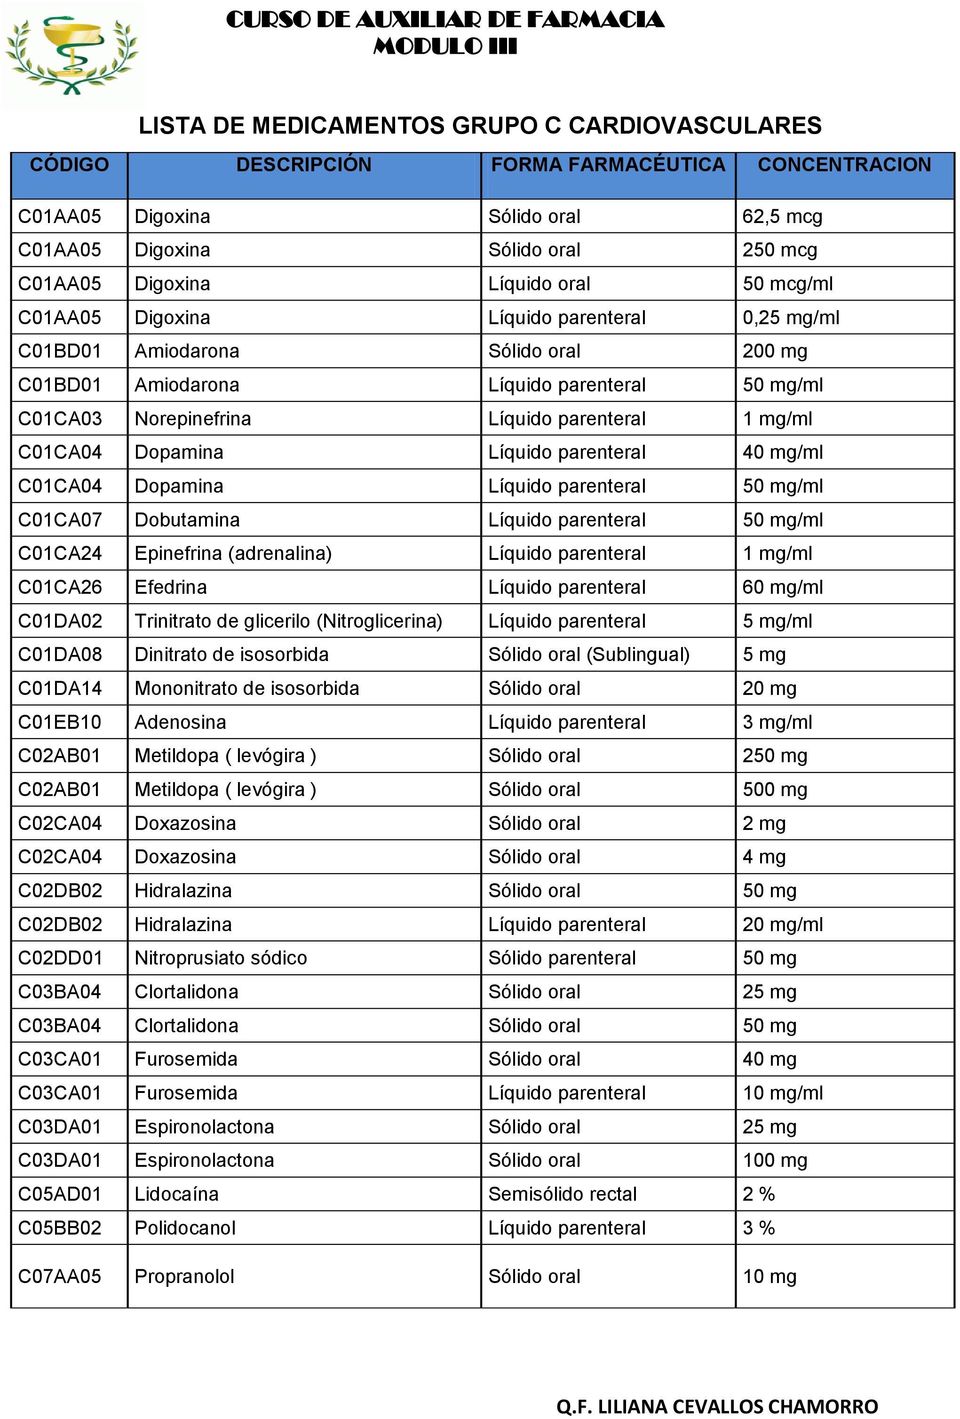 C01CA04 Dopamina Líquido parenteral 40 mg/ml C01CA04 Dopamina Líquido parenteral 50 mg/ml C01CA07 Dobutamina Líquido parenteral 50 mg/ml C01CA24 Epinefrina (adrenalina) Líquido parenteral 1 mg/ml